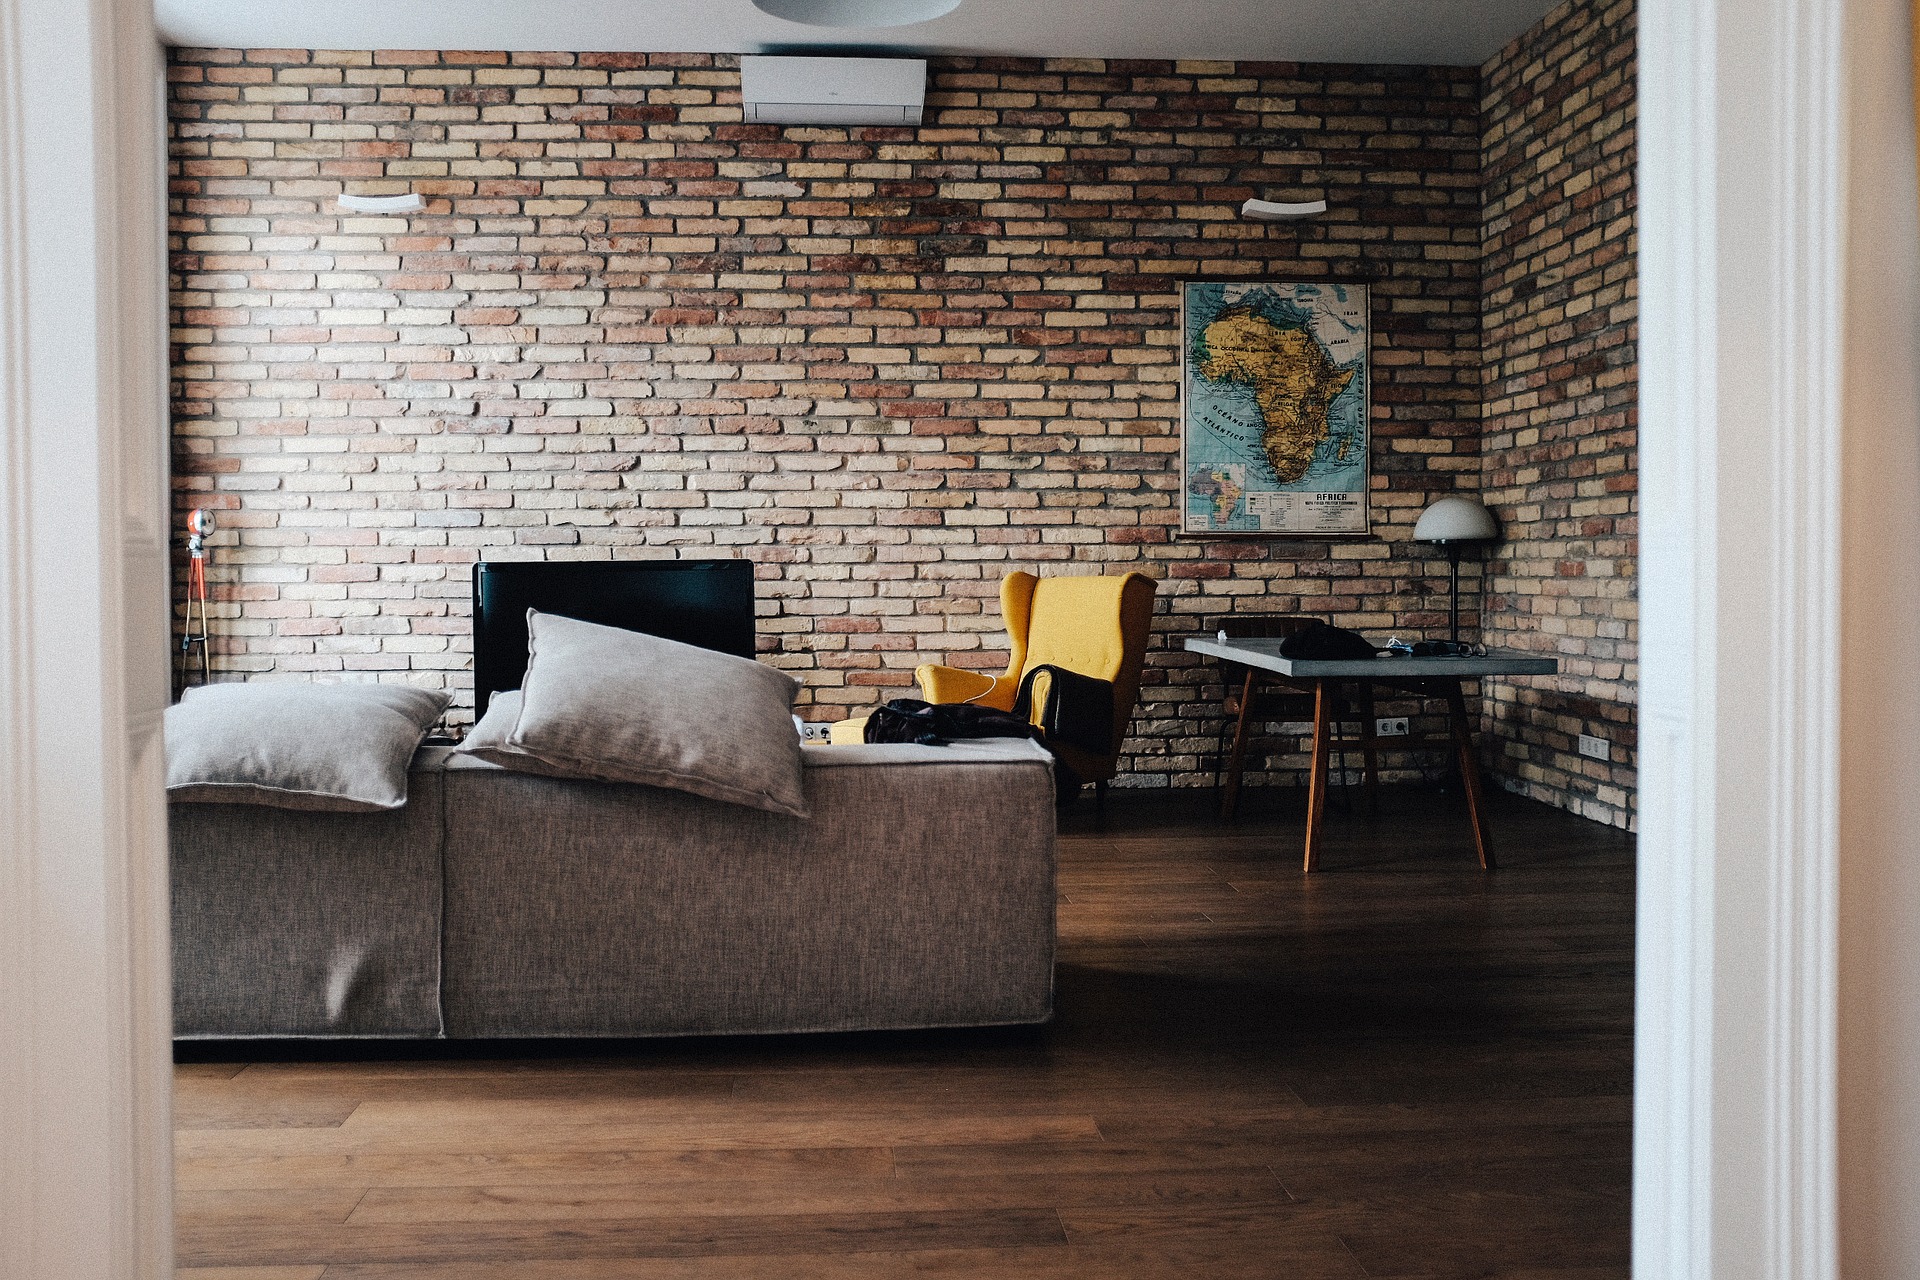 Obývací pokoj v moderním stylu je plný přírody